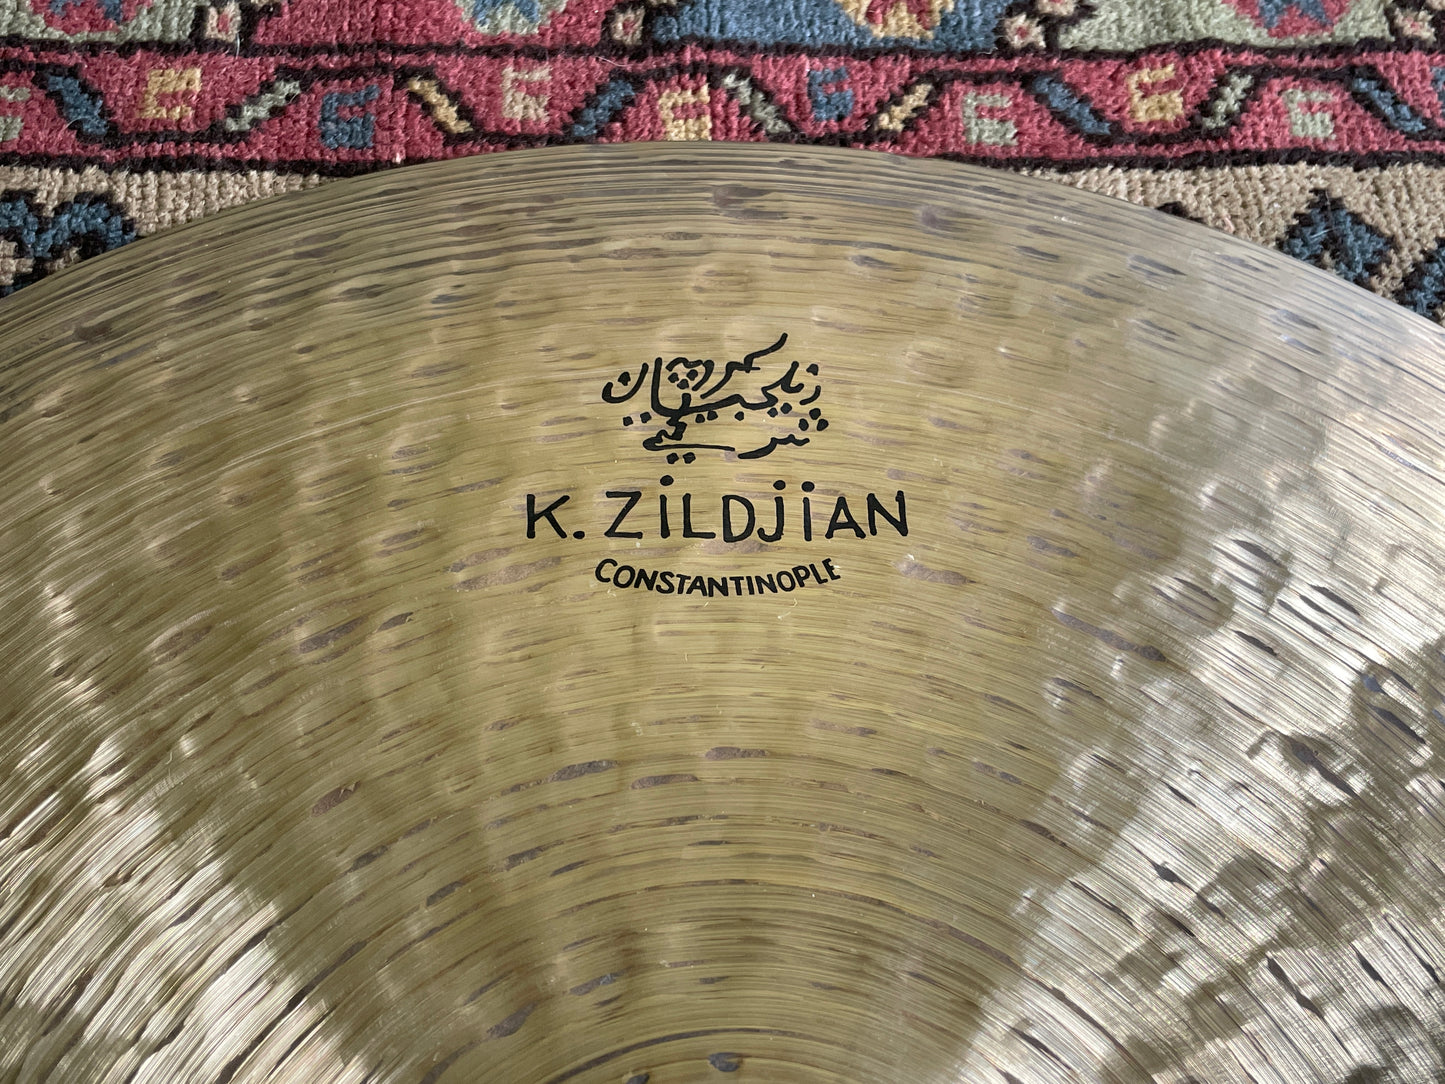 22" Zildjian K Constantinople Ride Cymbal 2862g